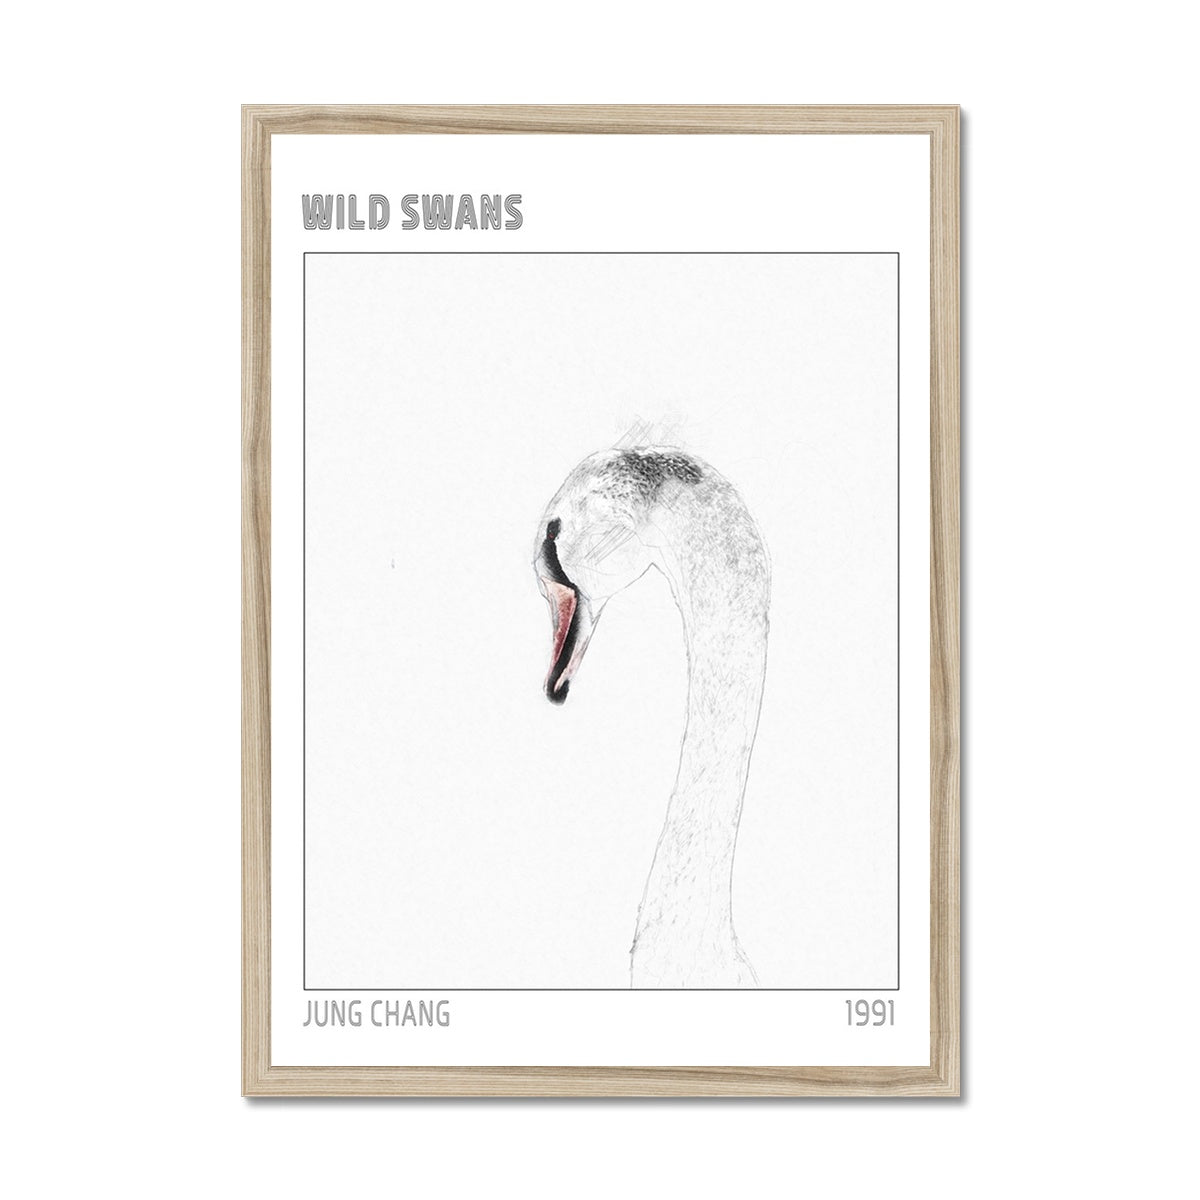 Swan "Wild Swans" Framed Print